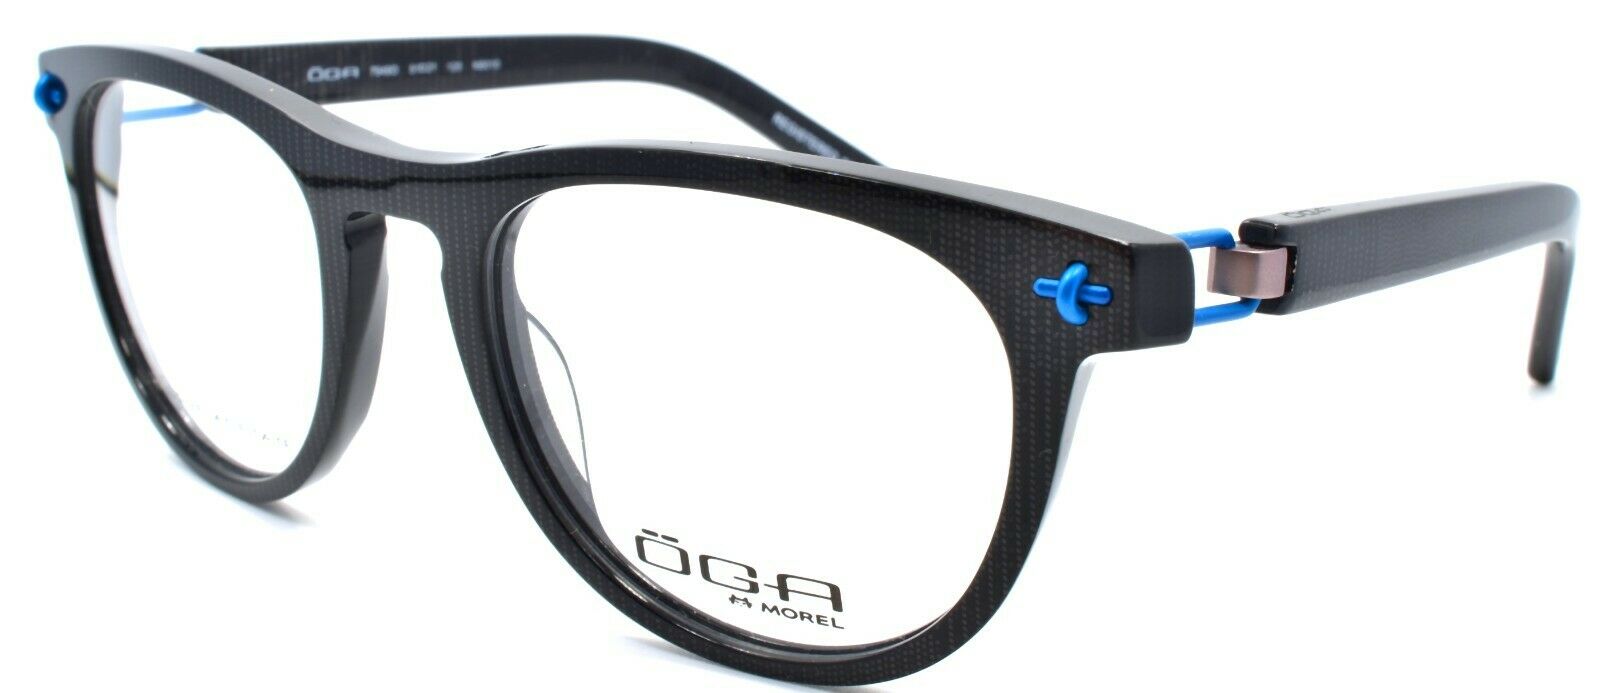 1-OGA by Morel 7949O NB010 Men's Eyeglasses Frames 51-21-125 Shiny Black France-3604770882568-IKSpecs